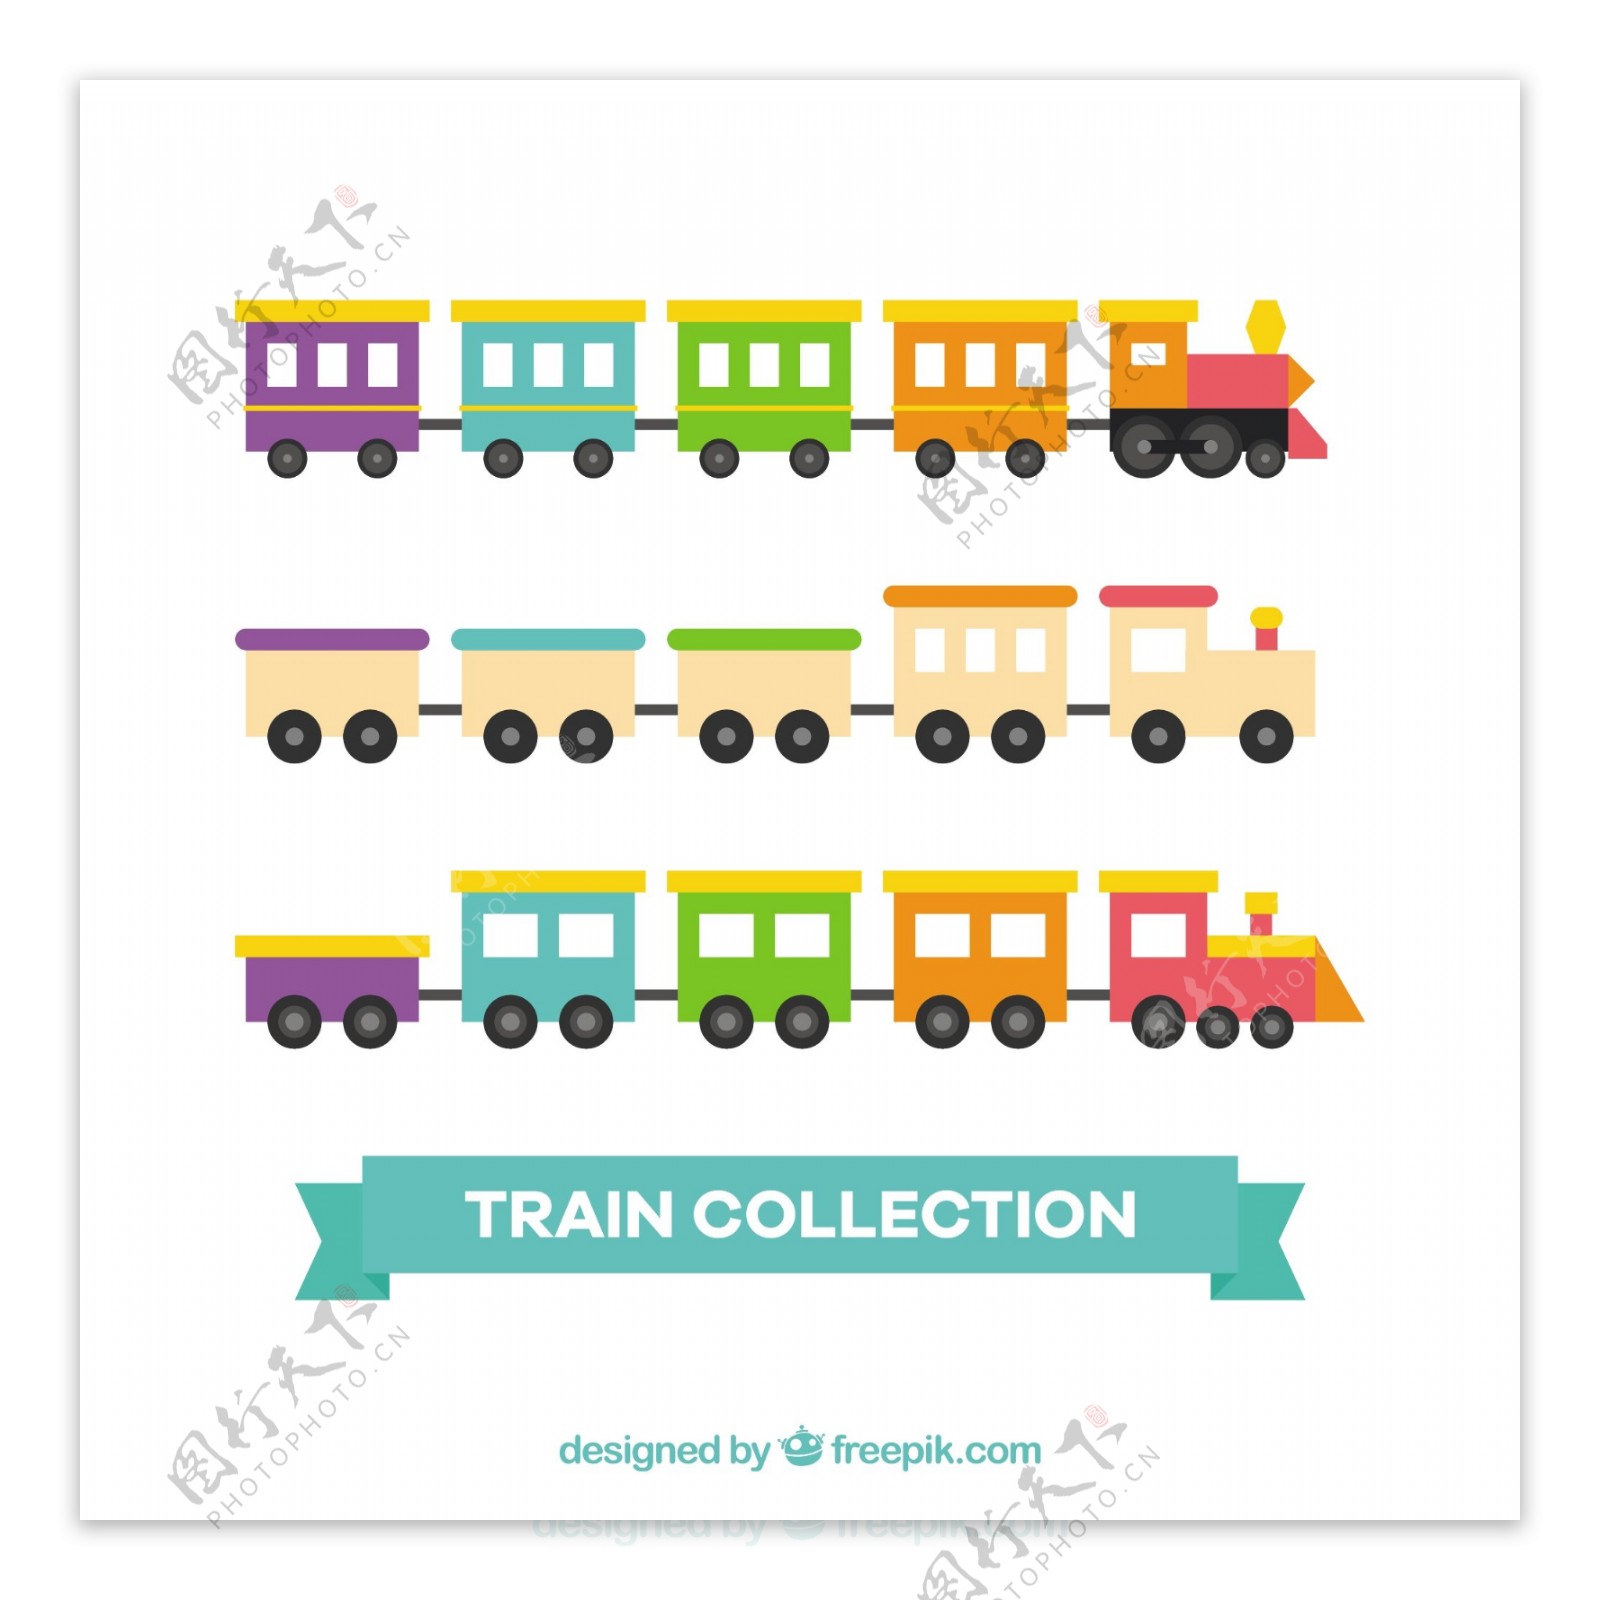 手绘各种彩色玩具火车矢量素材